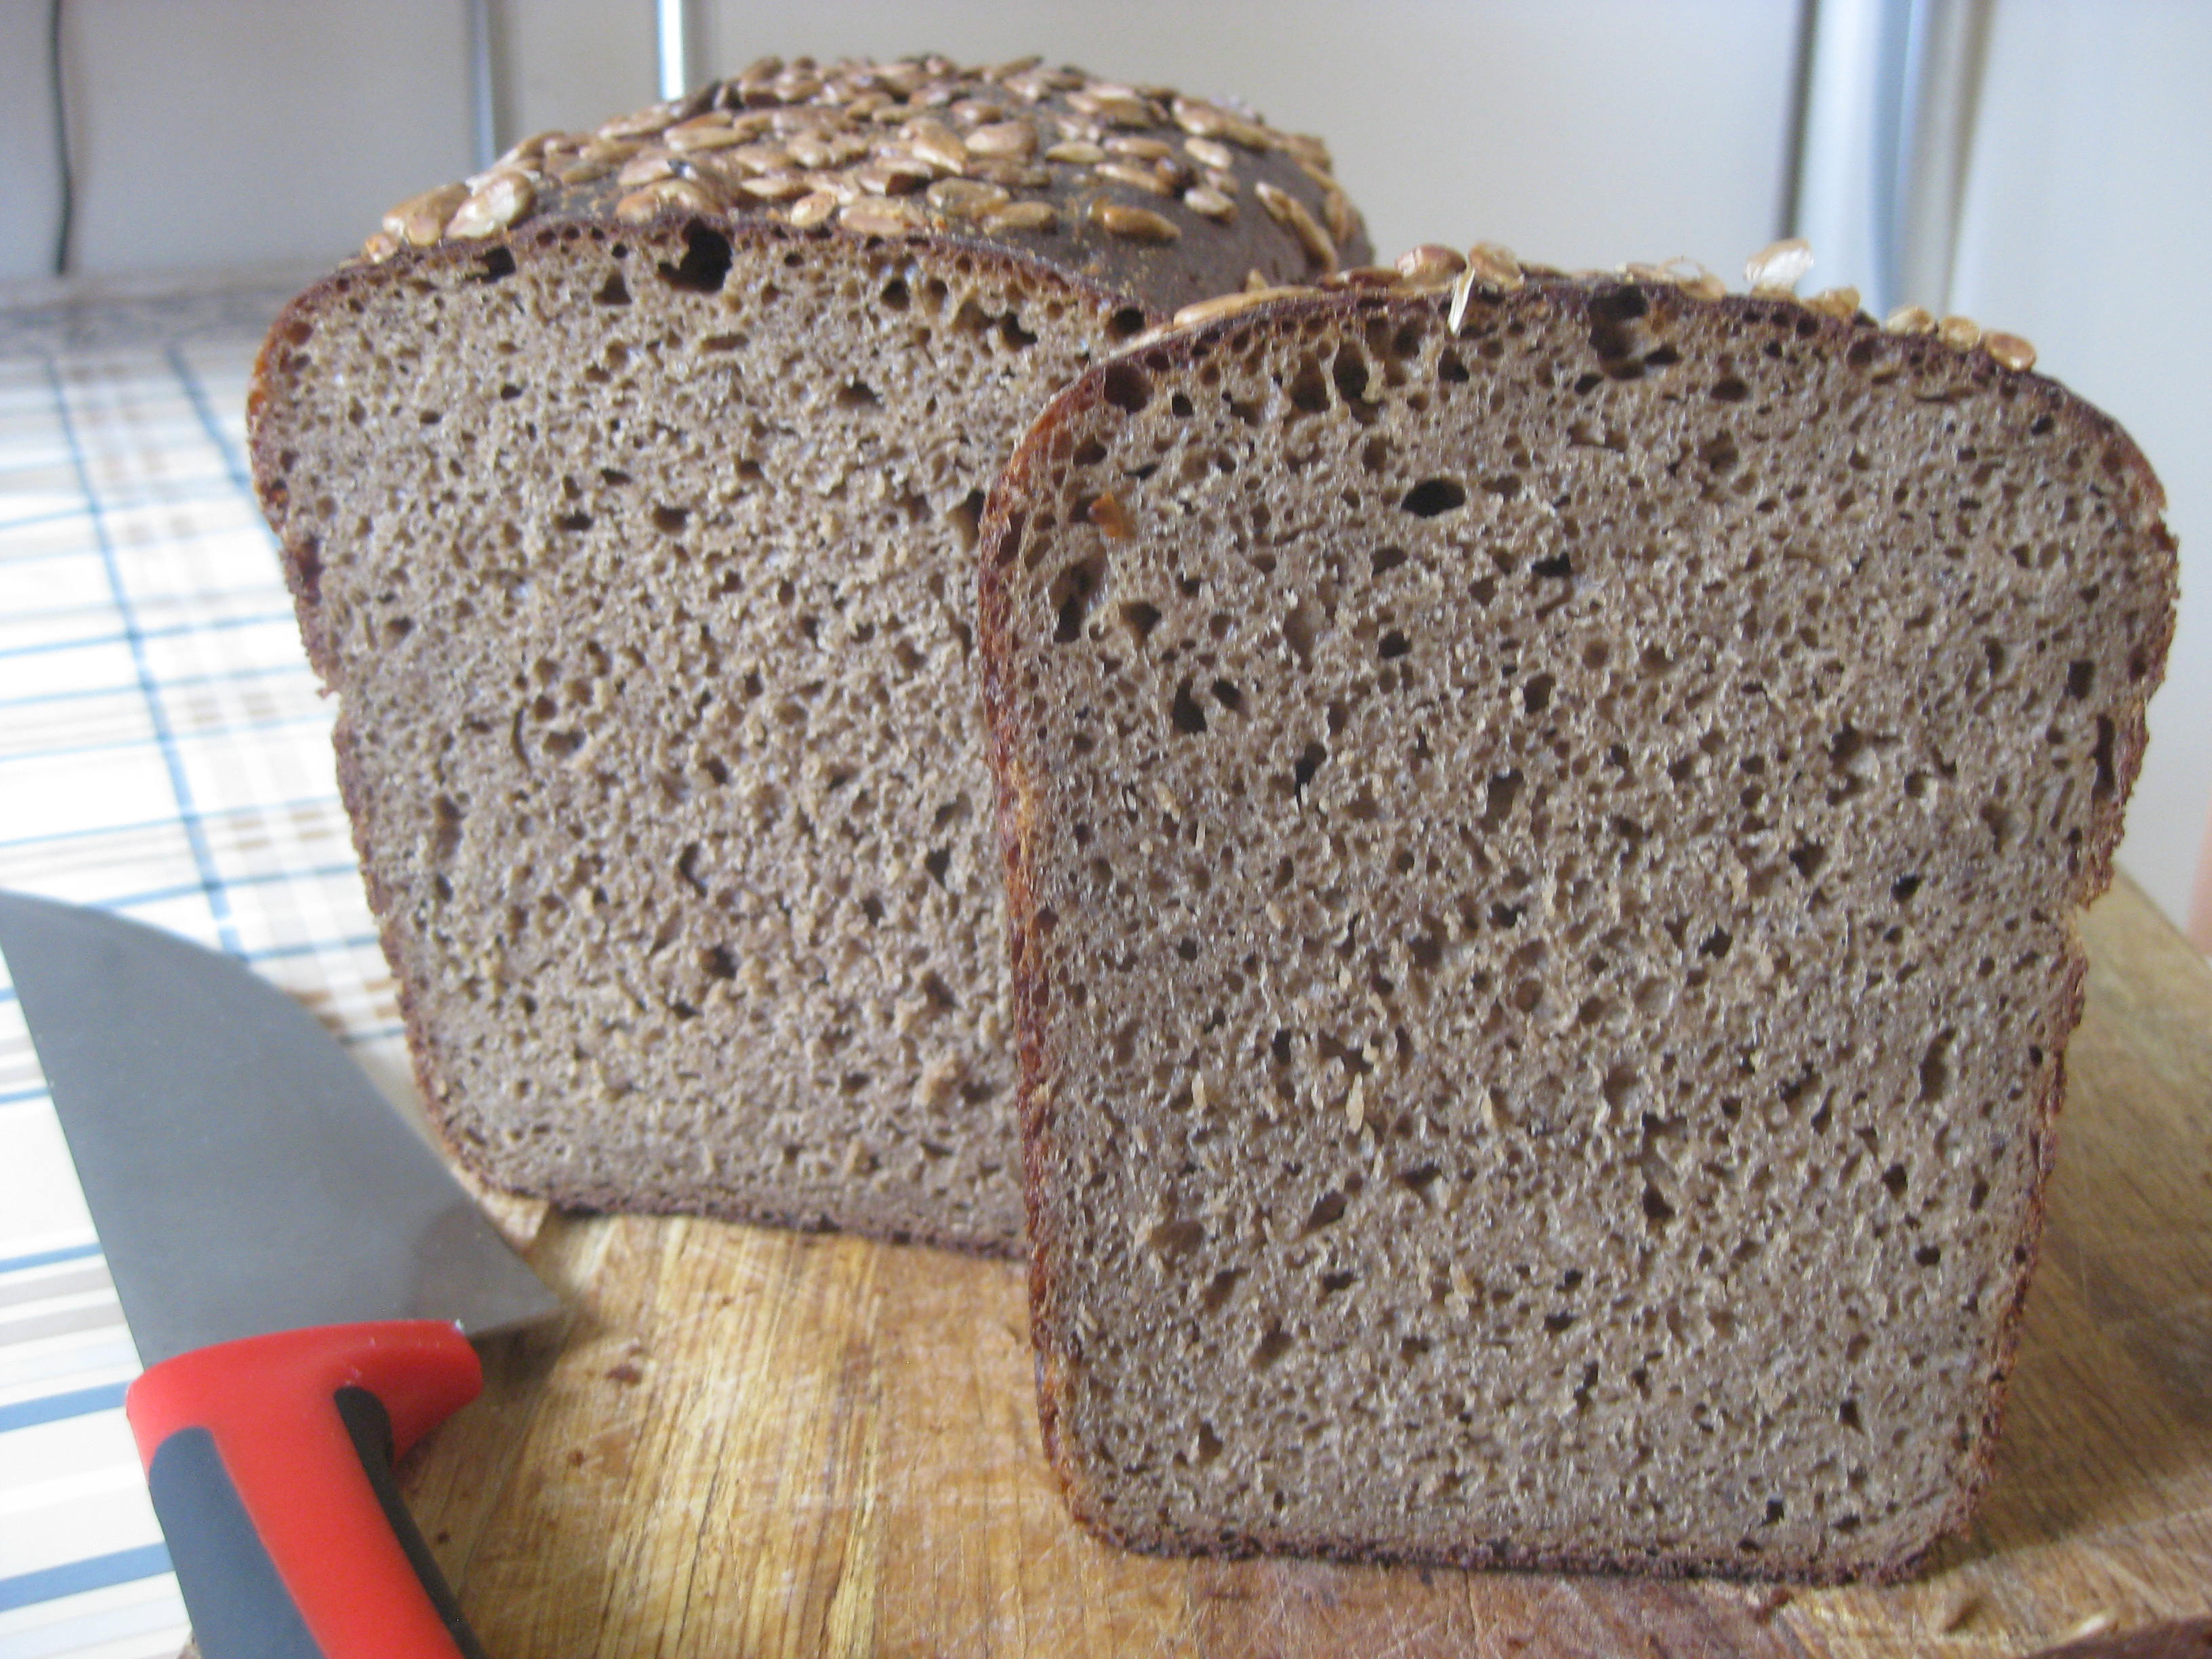 Rye-wheat bread based on Russian